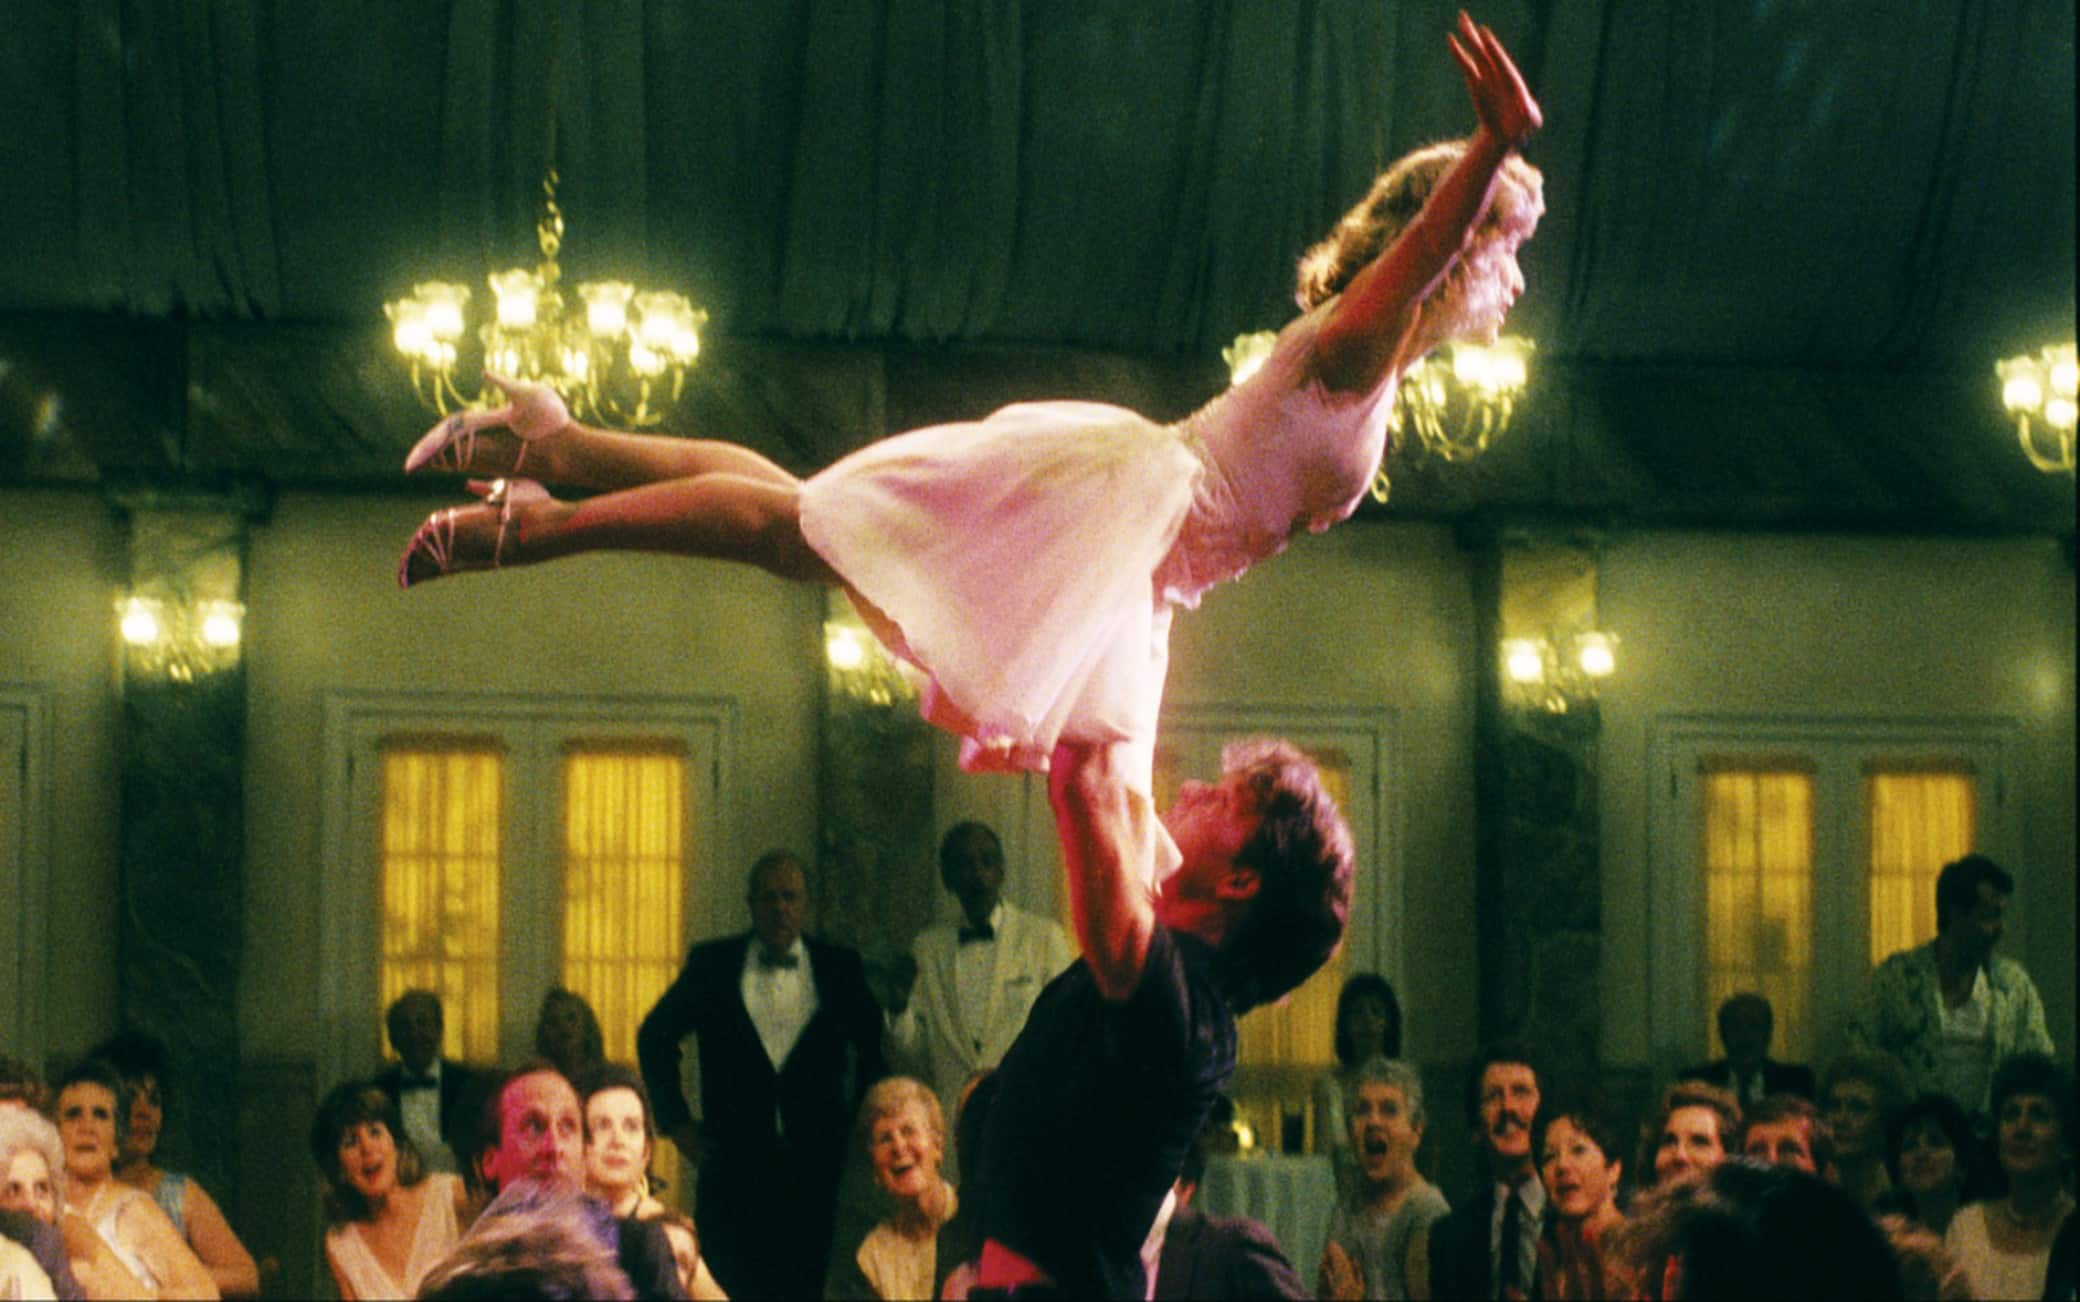 “Dirty Dancing”, alle 21.35 su Tv8 il film del 1987 con Patrick Swayze e Jennifer Grey: ecco la trama